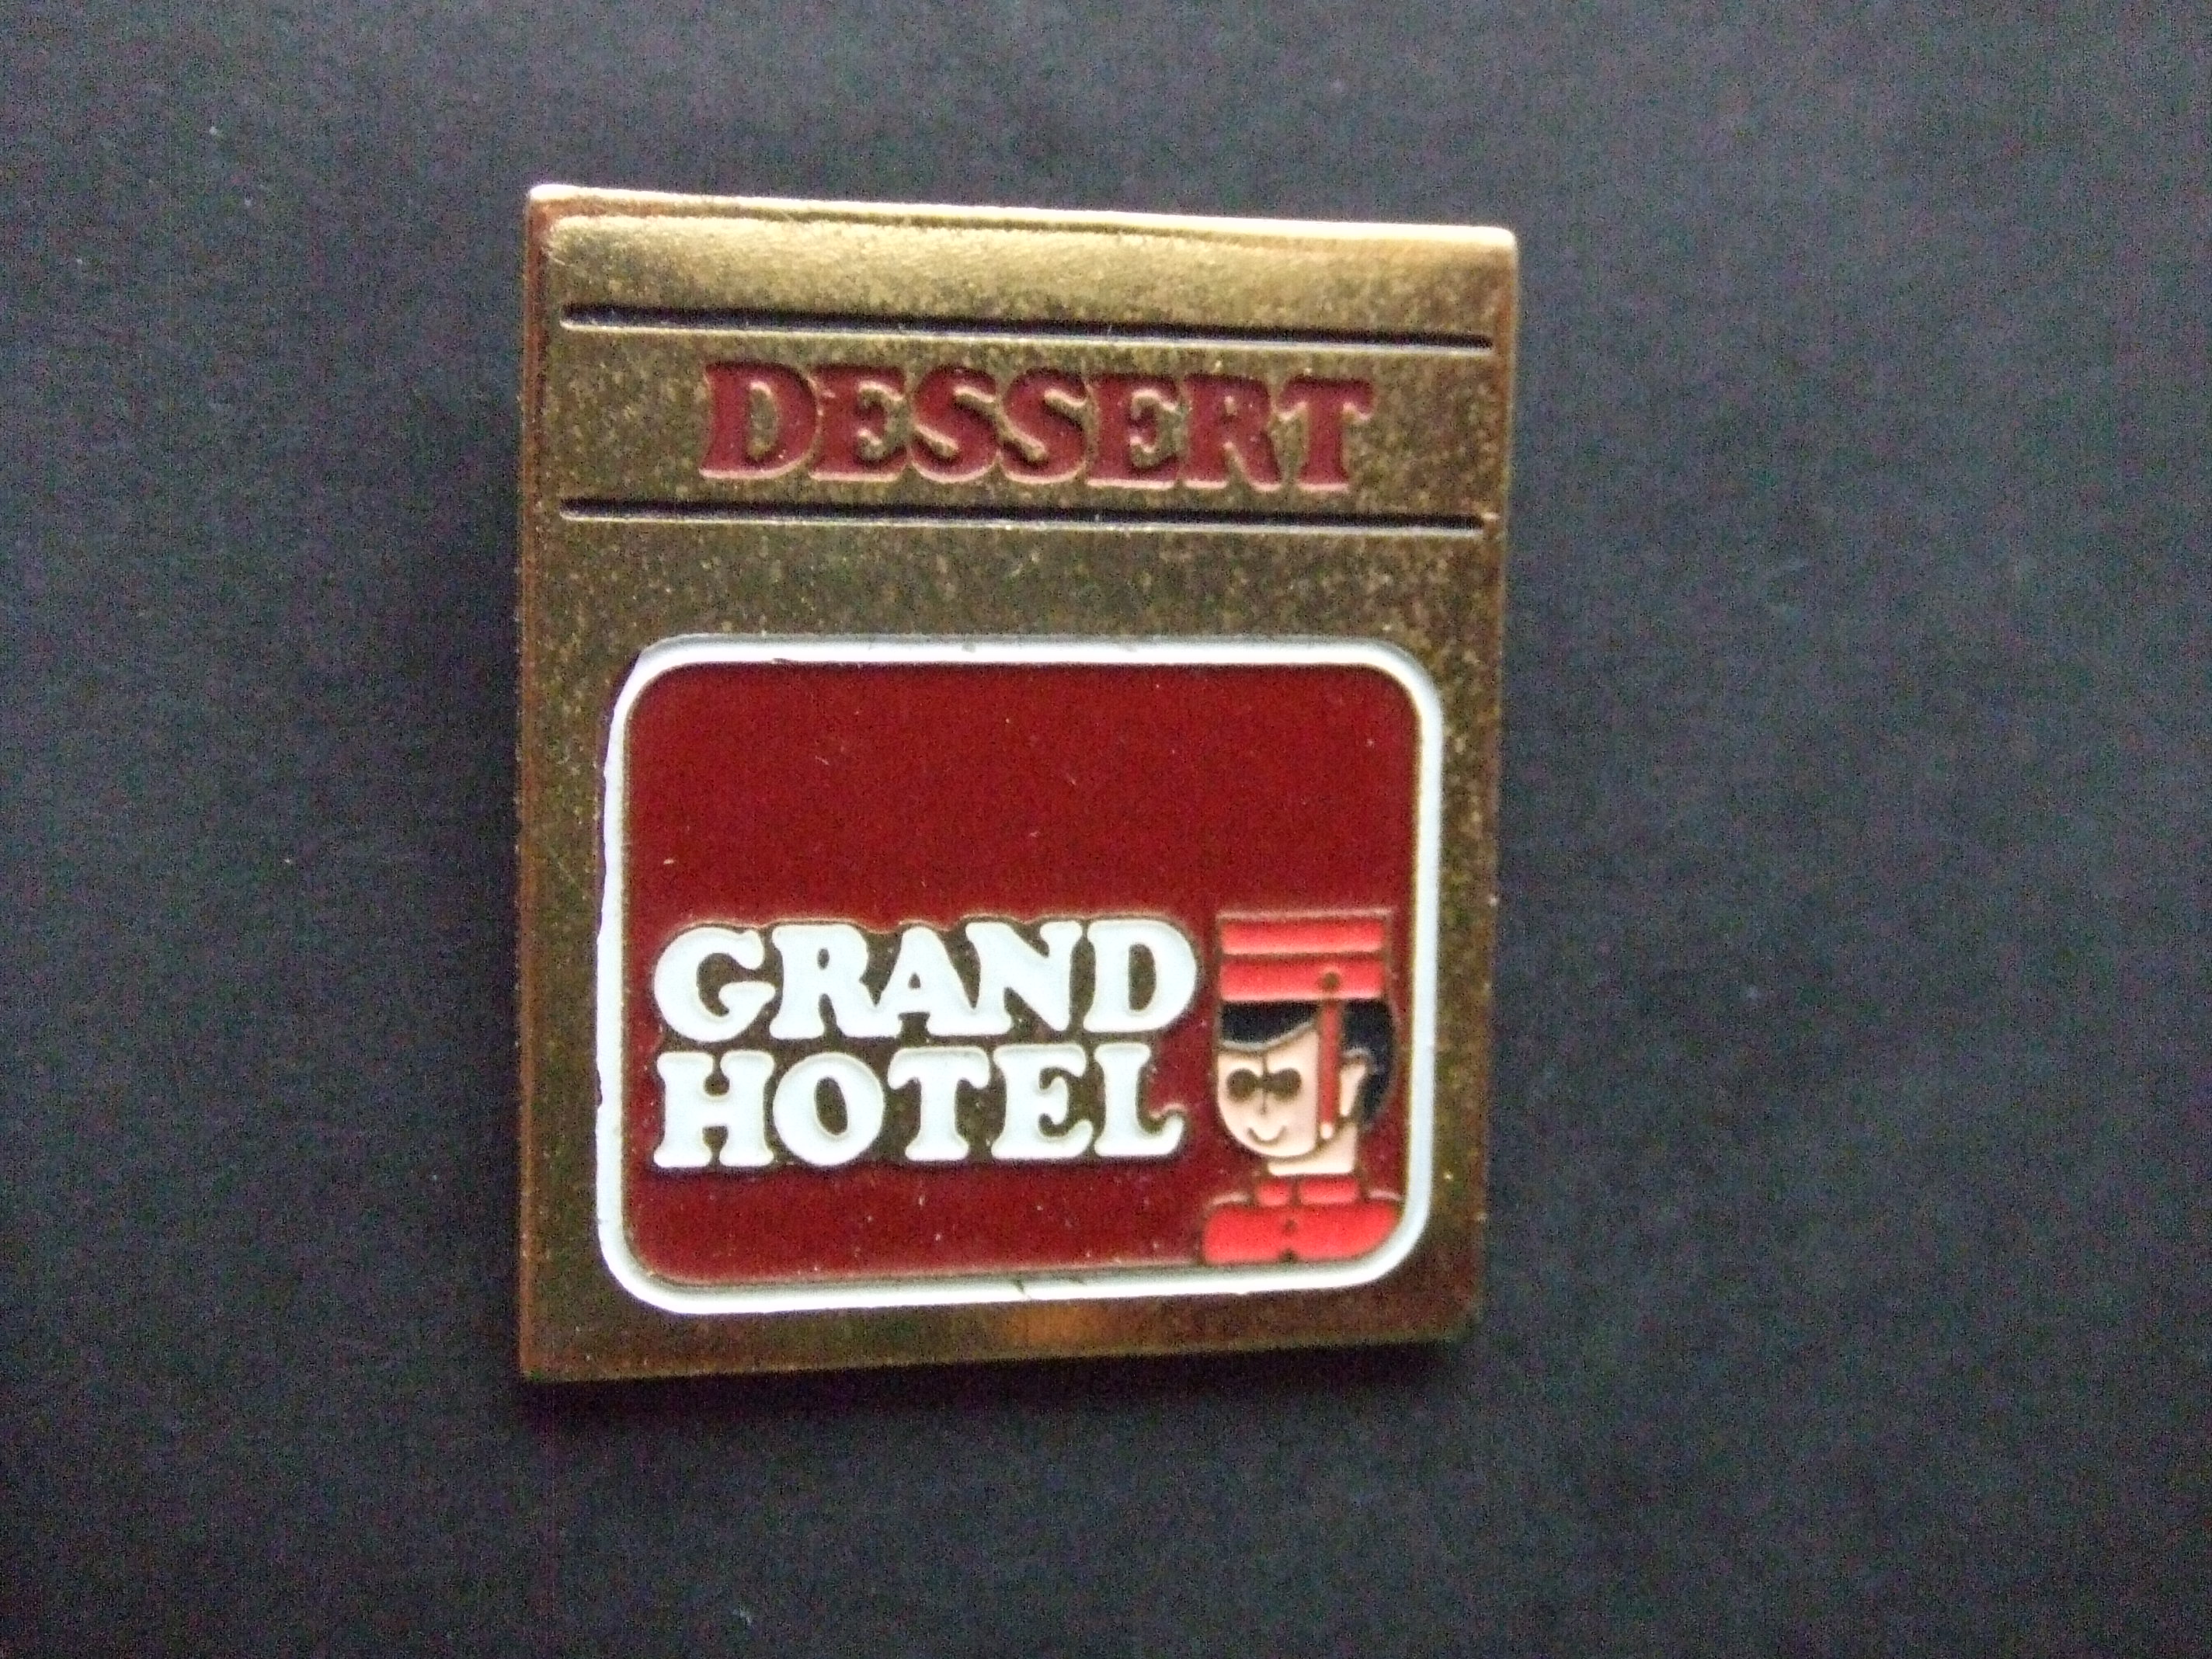 Dessert Grand Hotel,piccolo